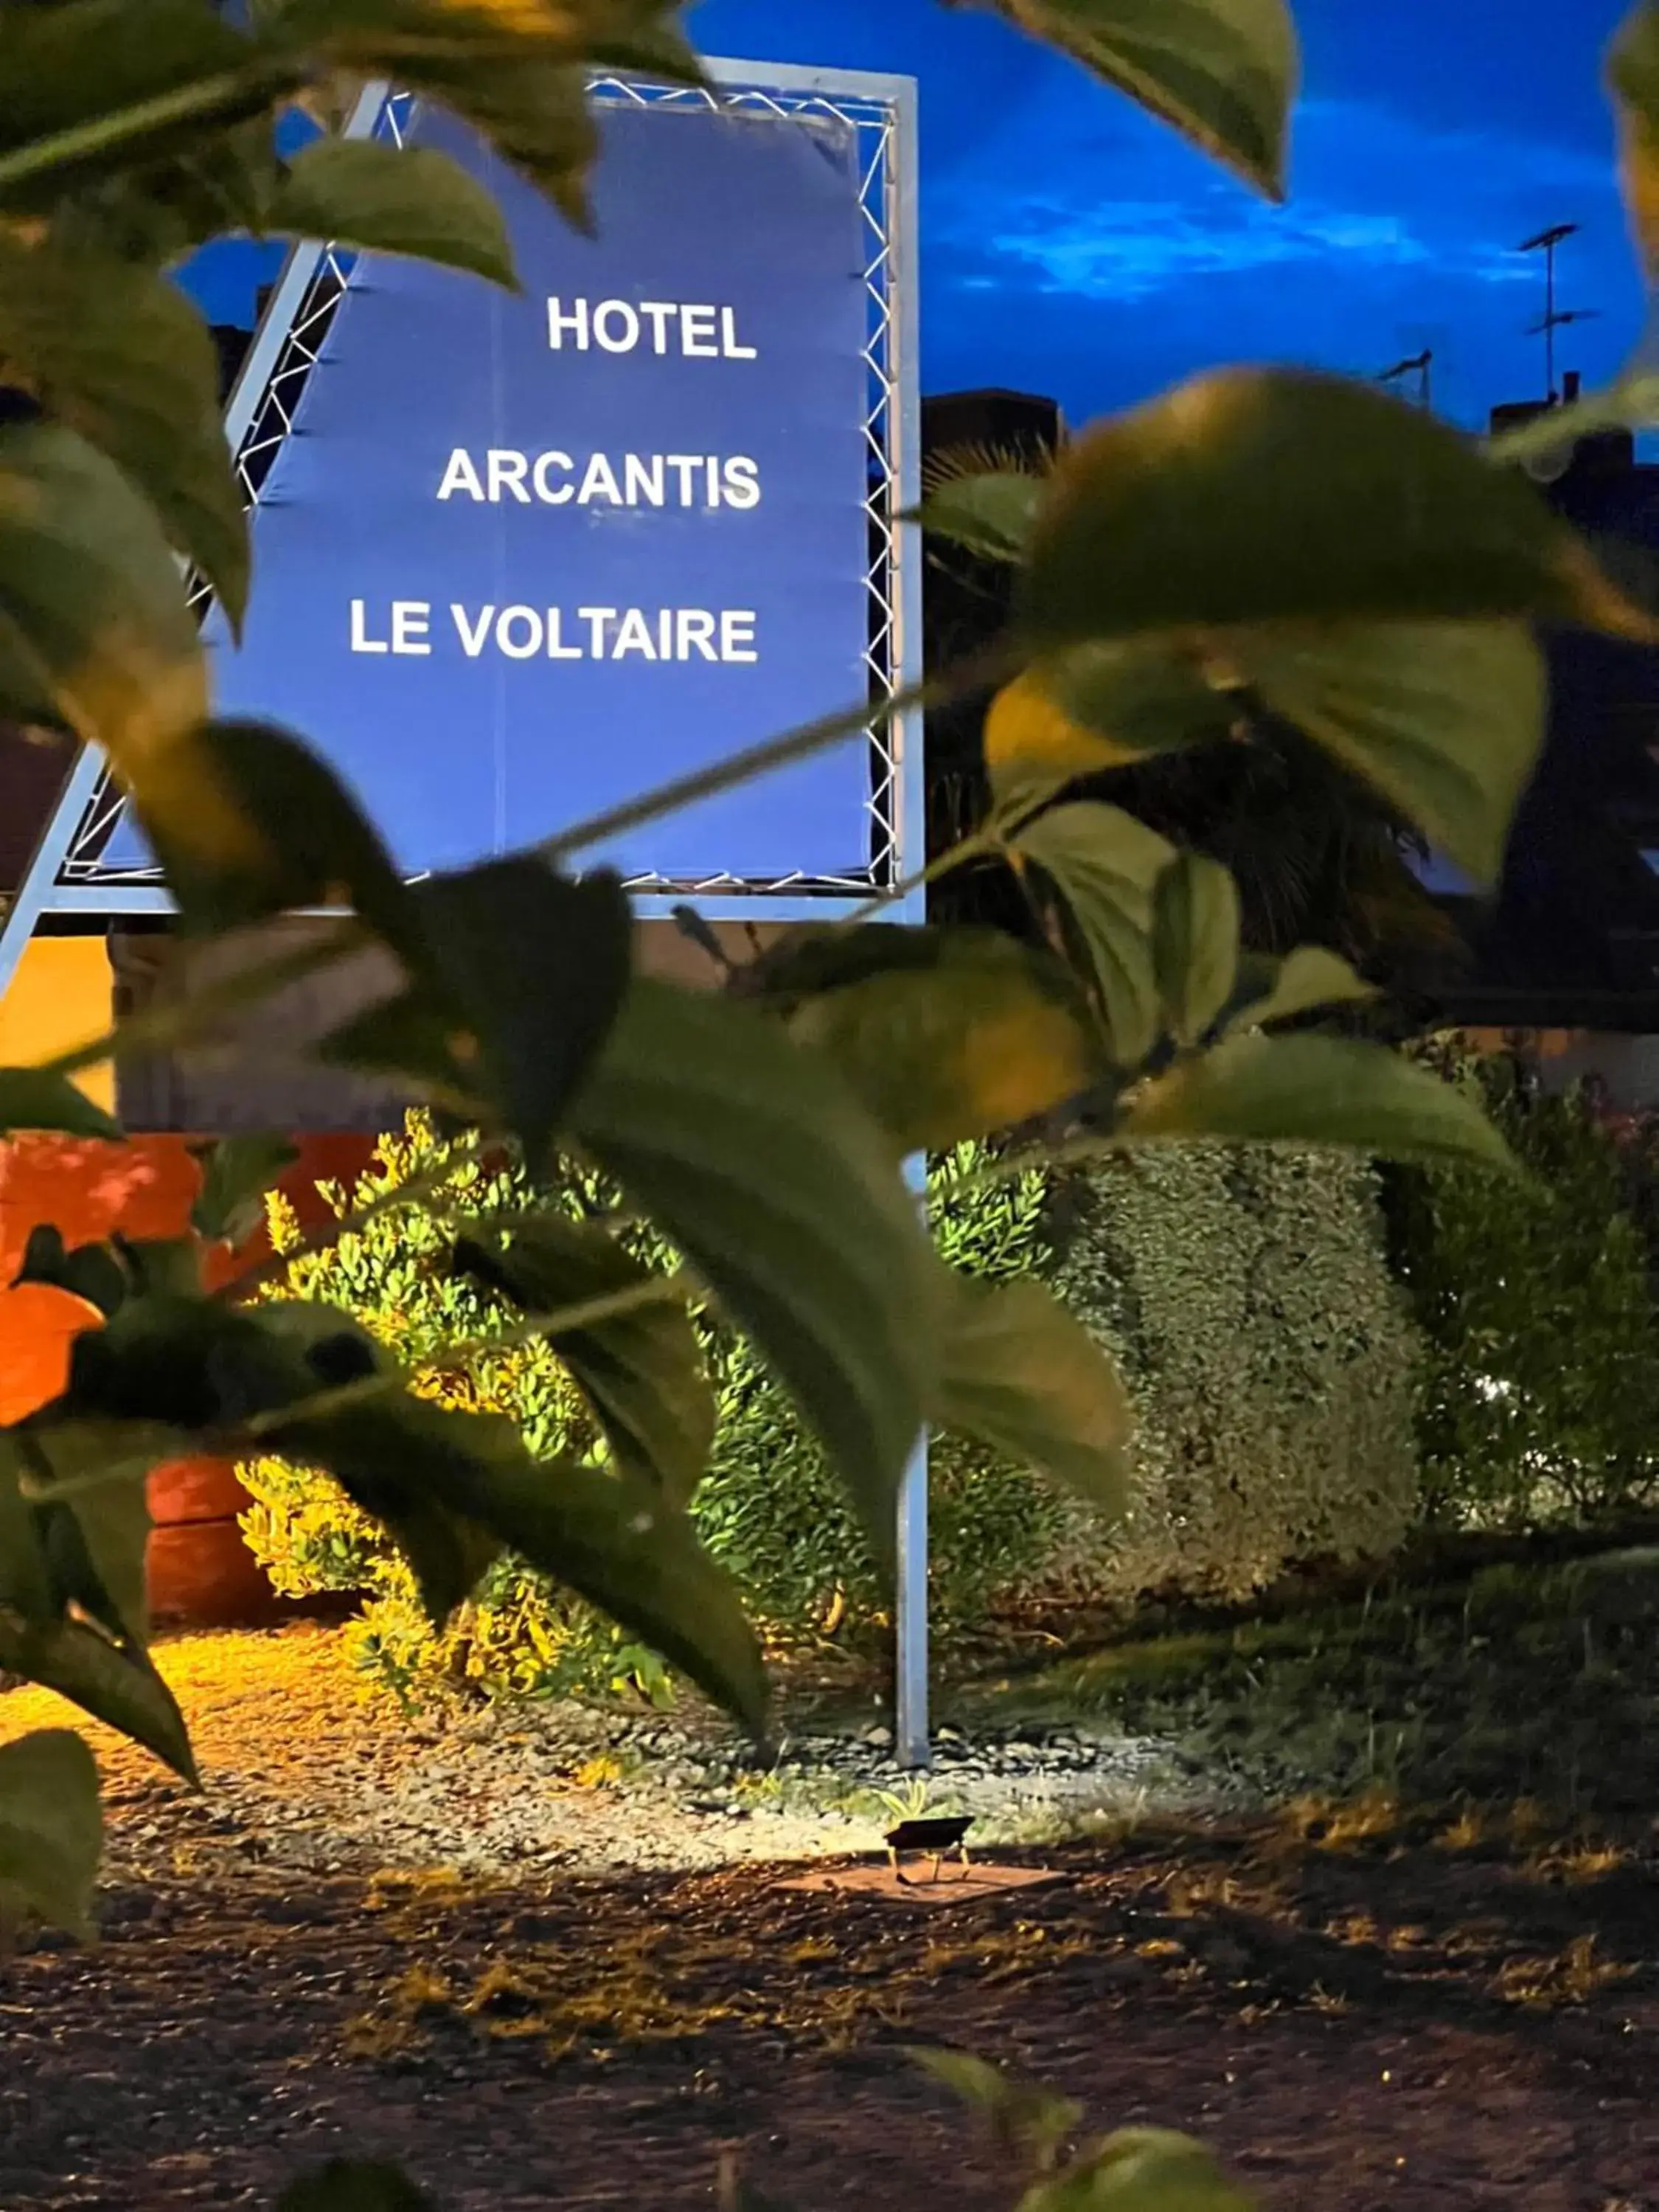 Hotel Arcantis Le Voltaire